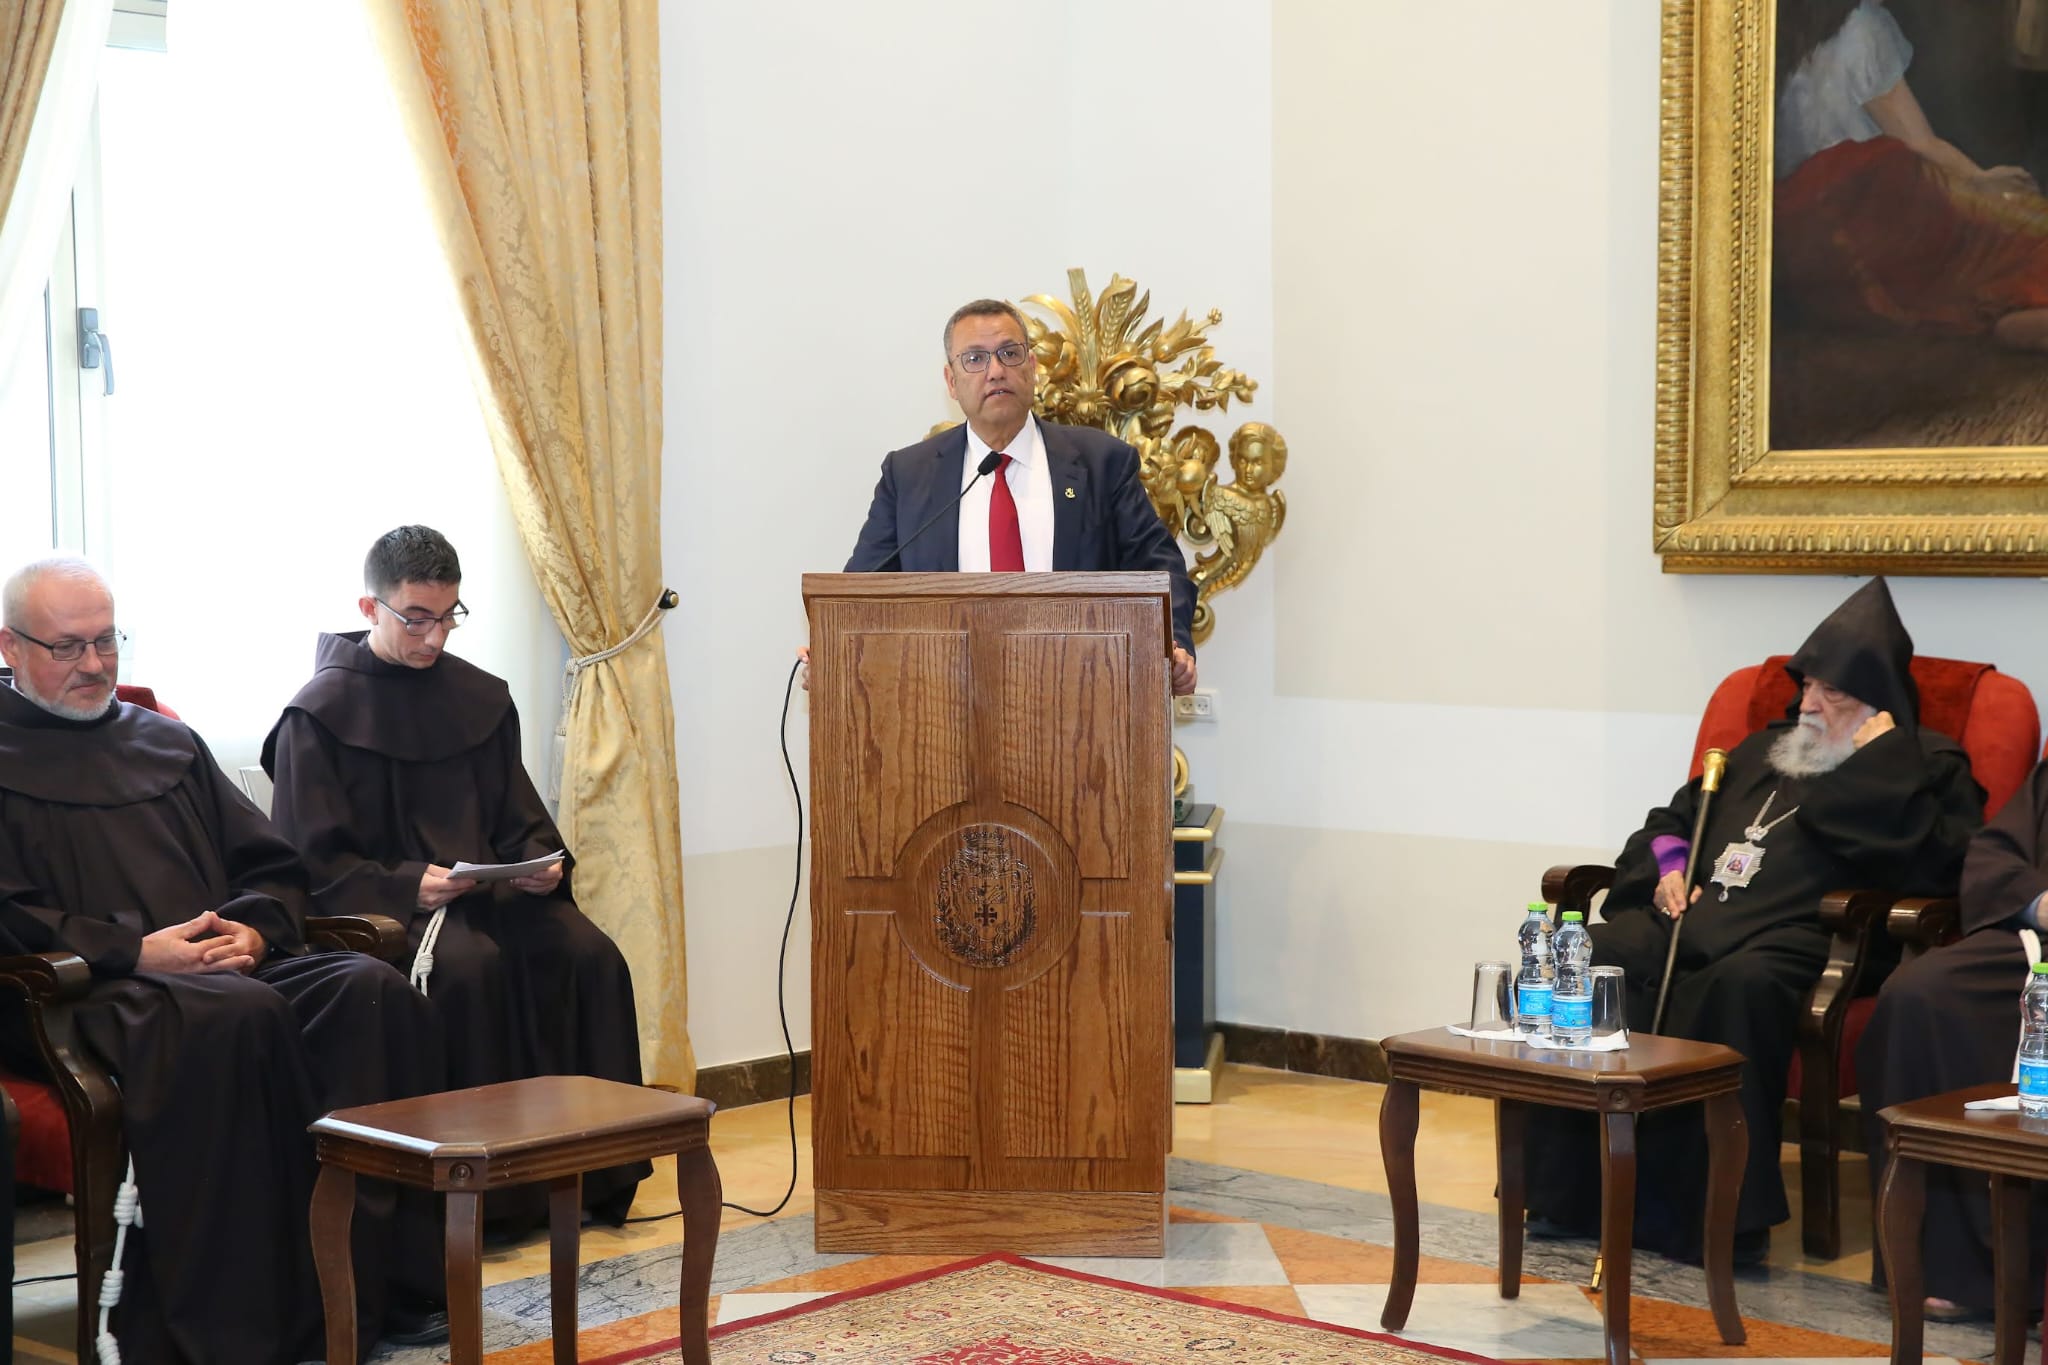 ראש העיר ירושלים במפגש עם ראשי הכנסיות בעיר: "ירושלים היא הבית של בני כל הדתות והמגזרים"